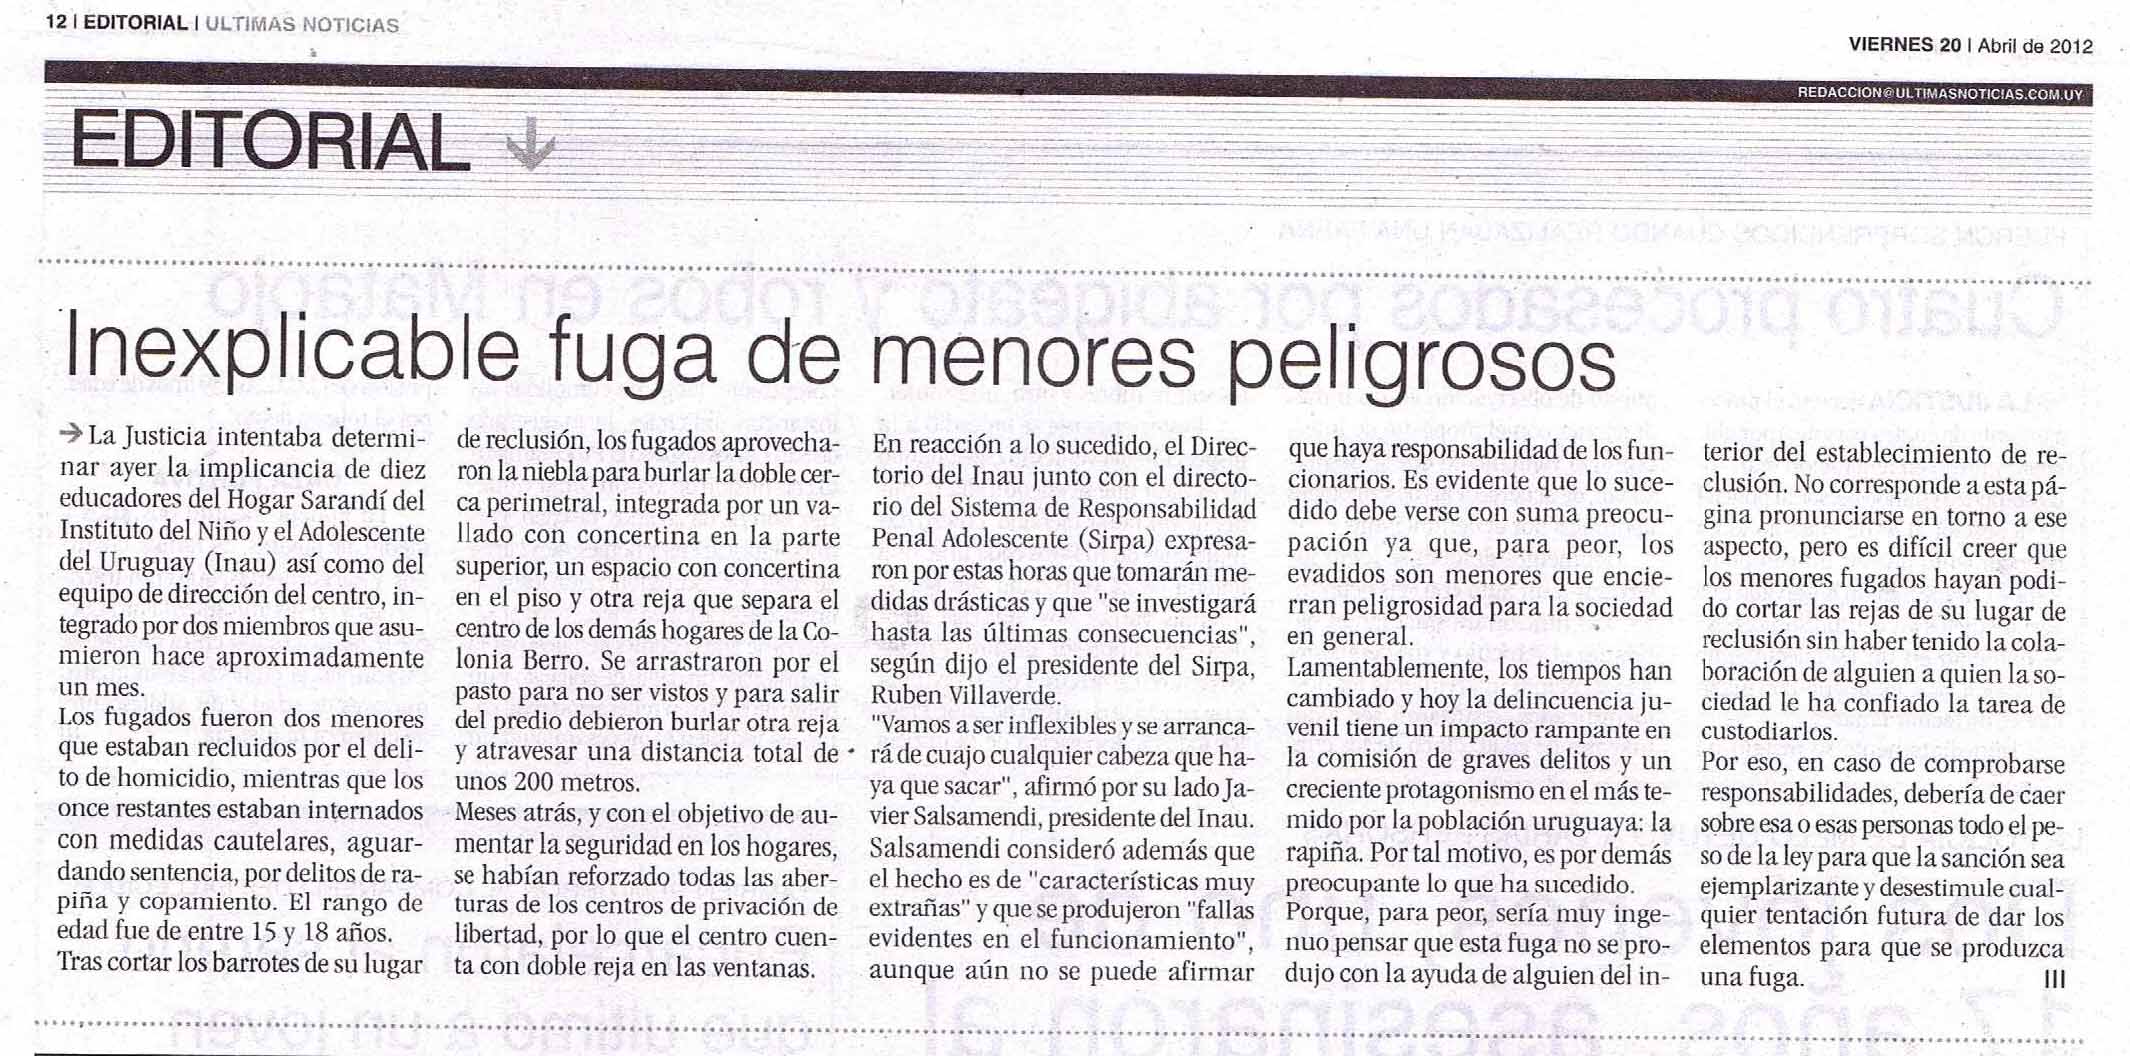 200412 Editioral Últimas Noticias